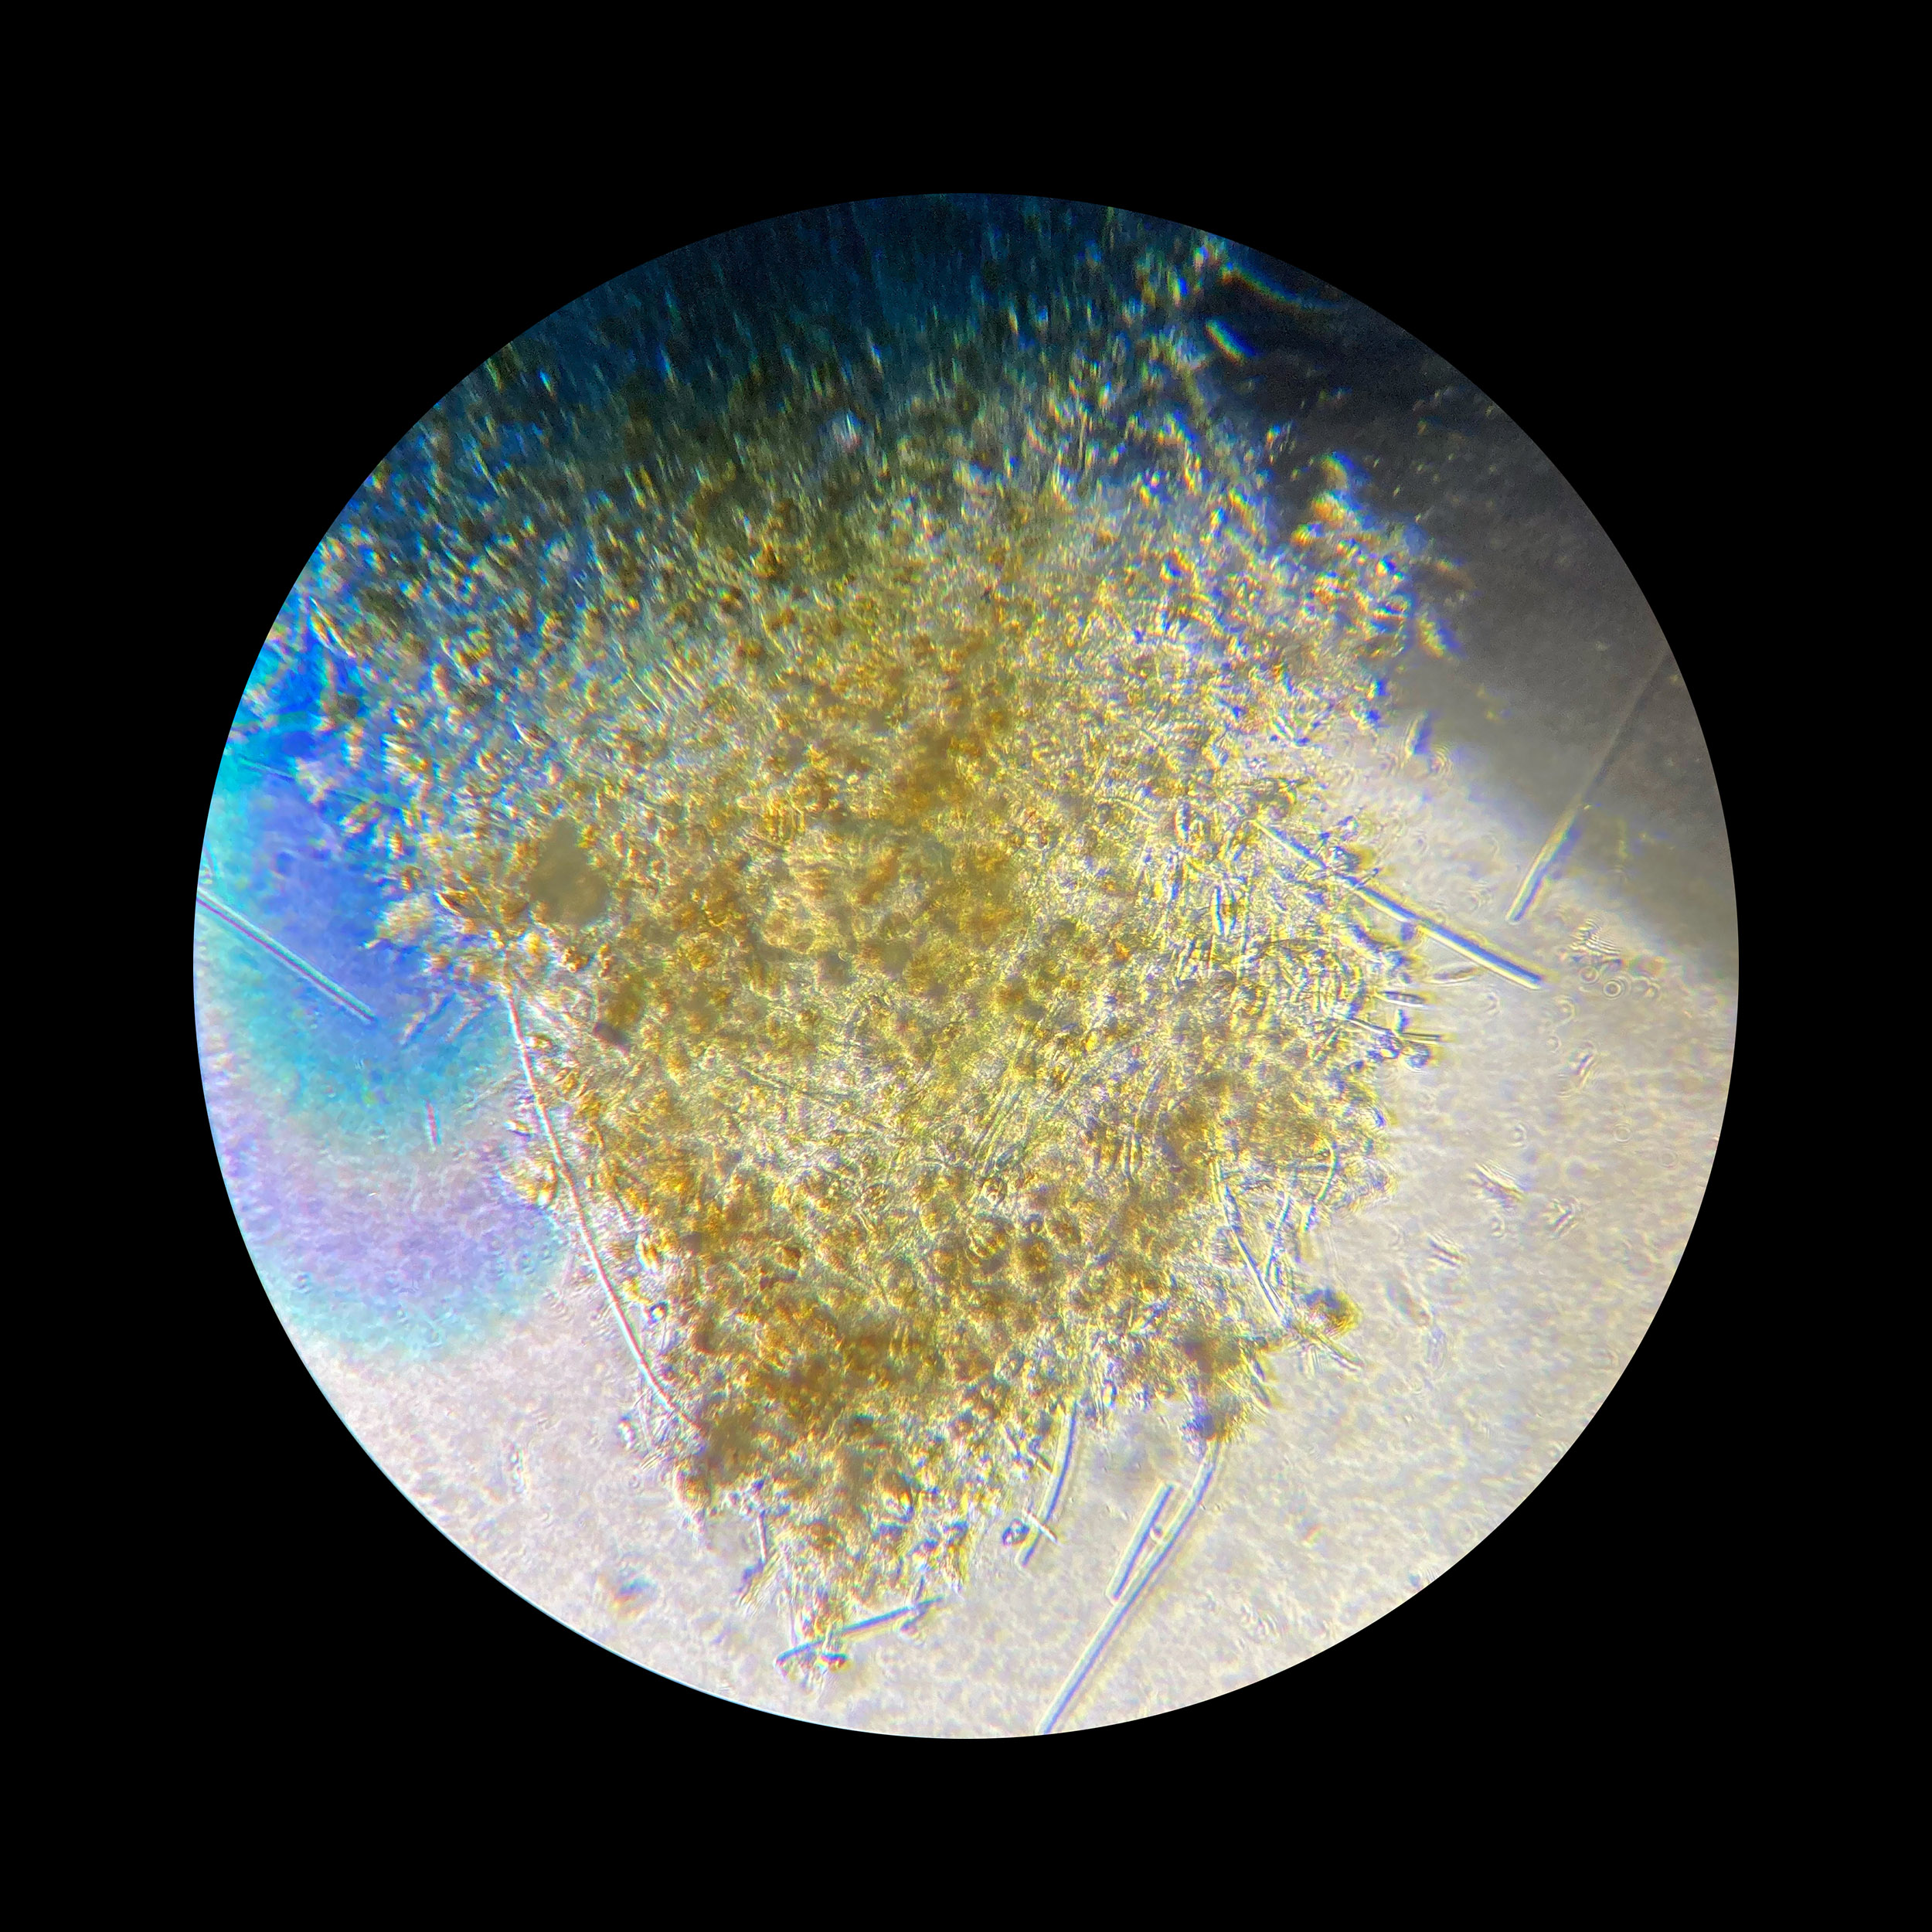 26-I-22-microscopy-IV.jpg